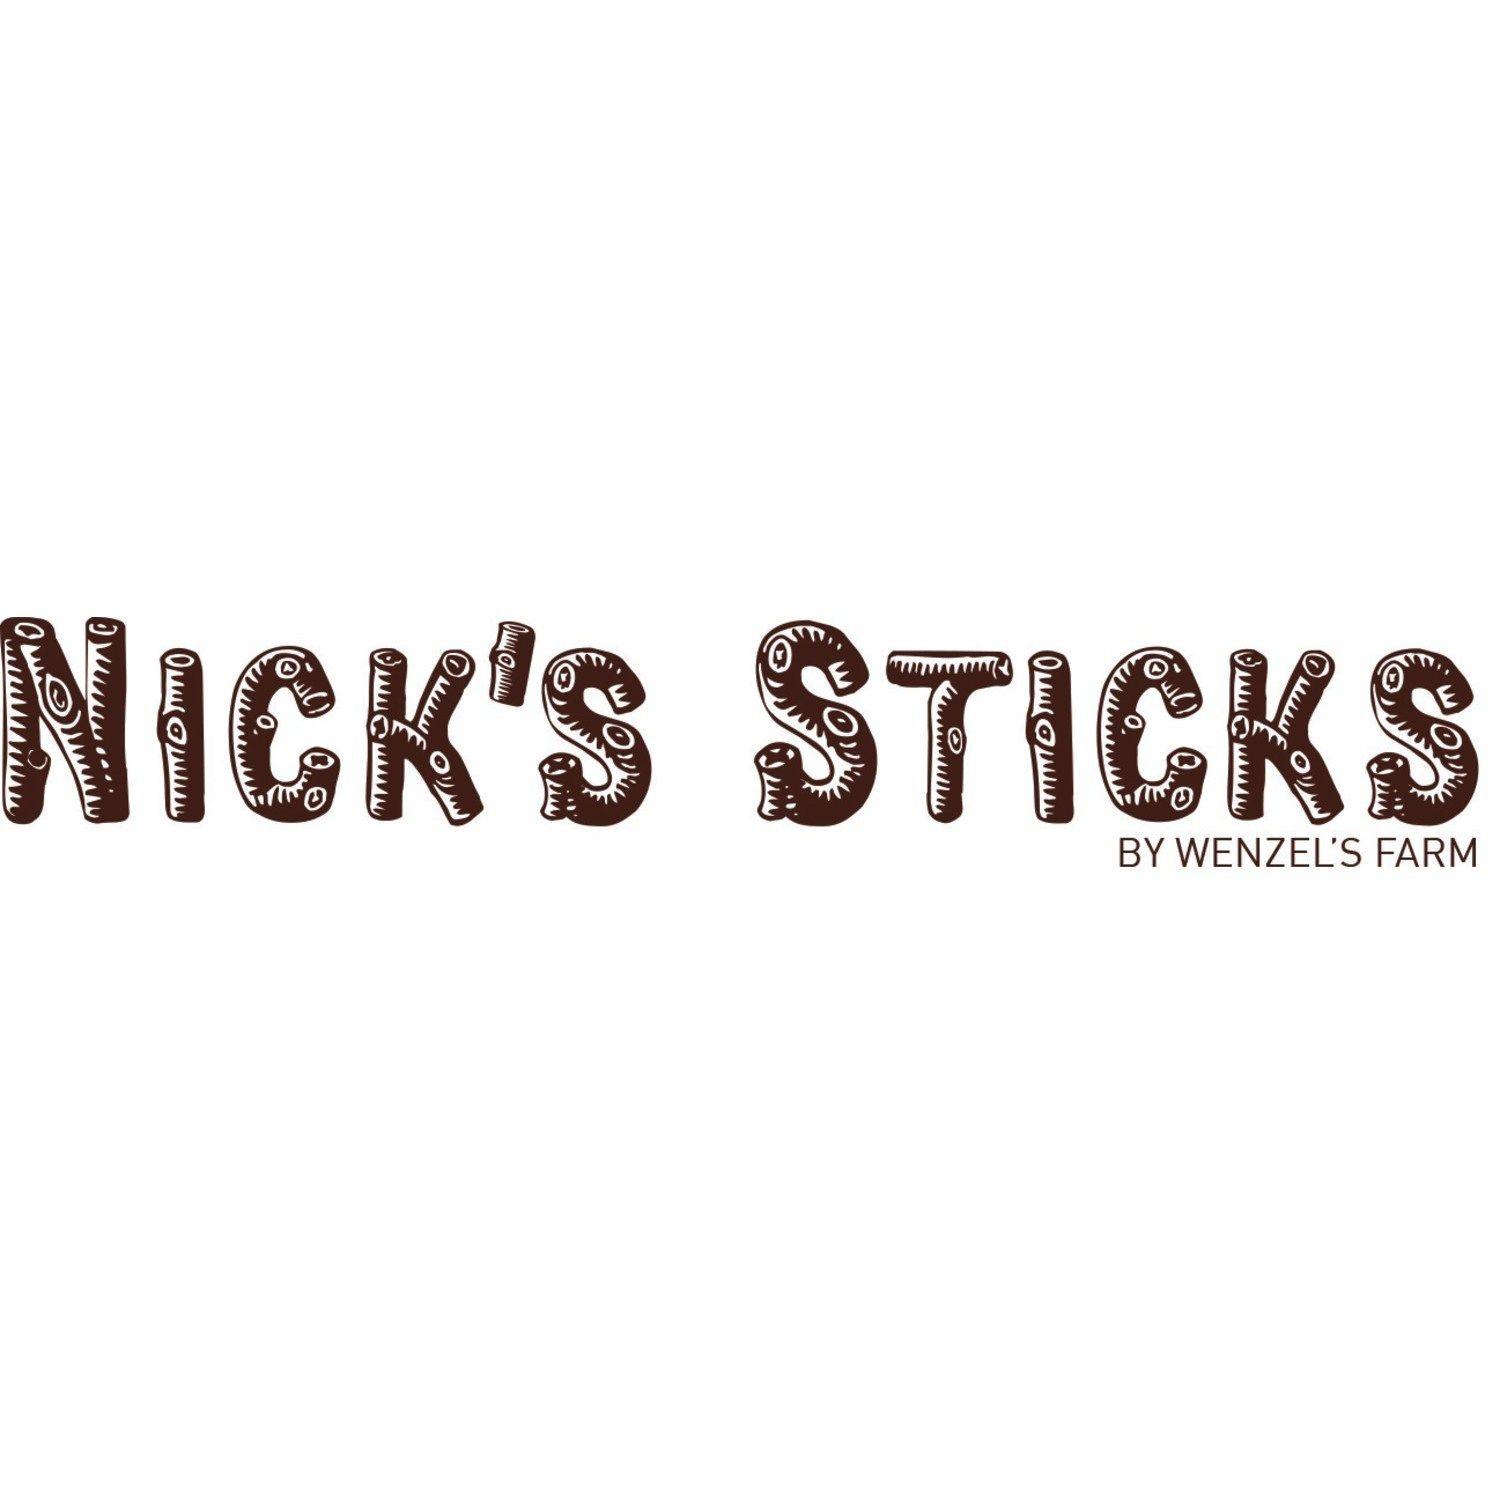 Sticks Logo - Nick's Sticks Announces Brand Refresh